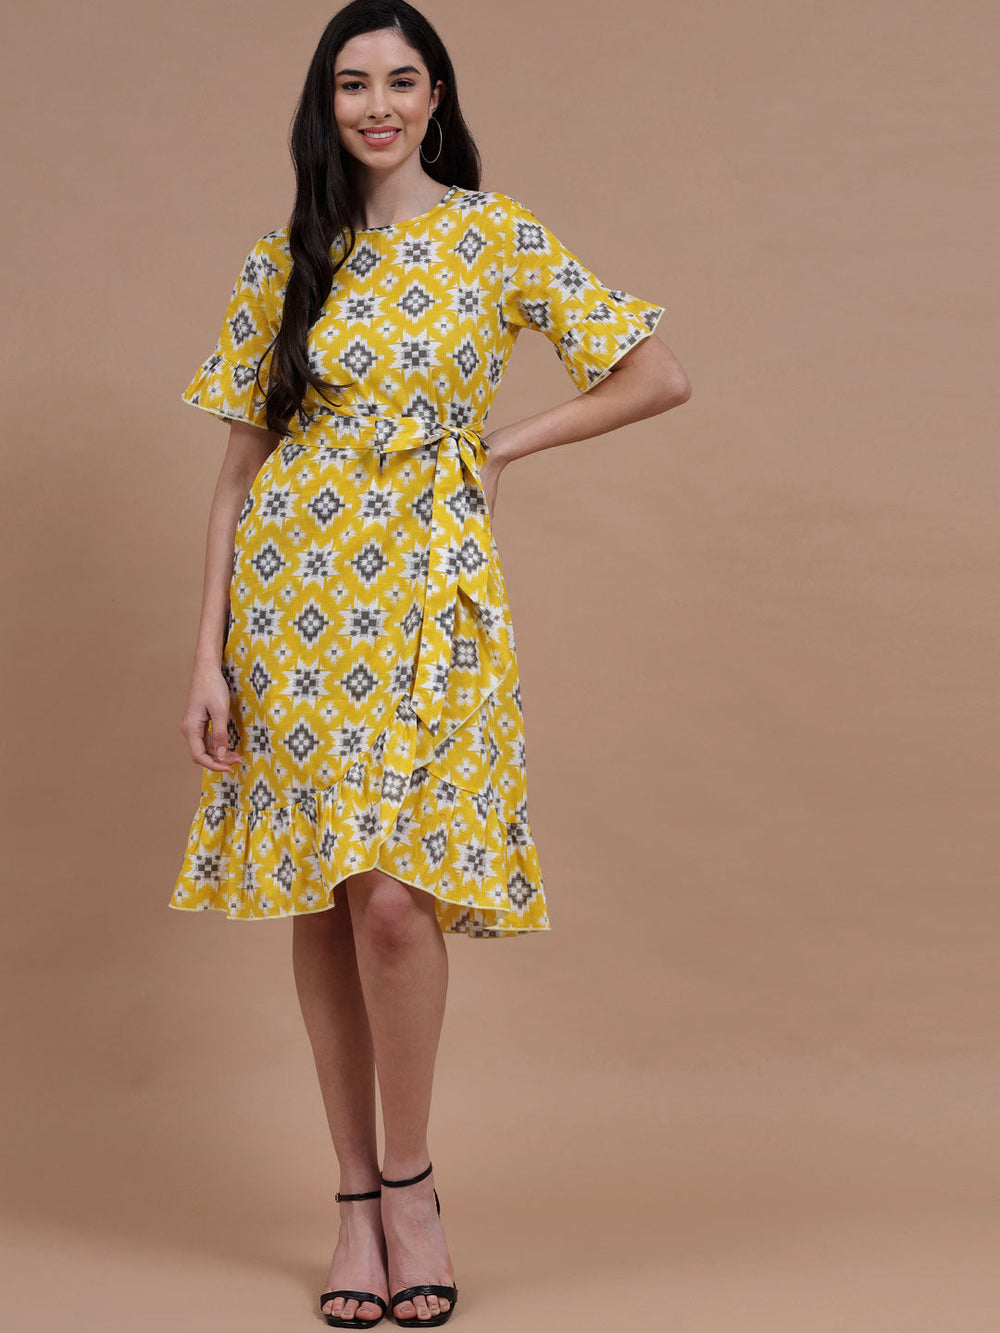 Women's Ruffle Dress - Bumblebee Printed Ruffle Dress#3